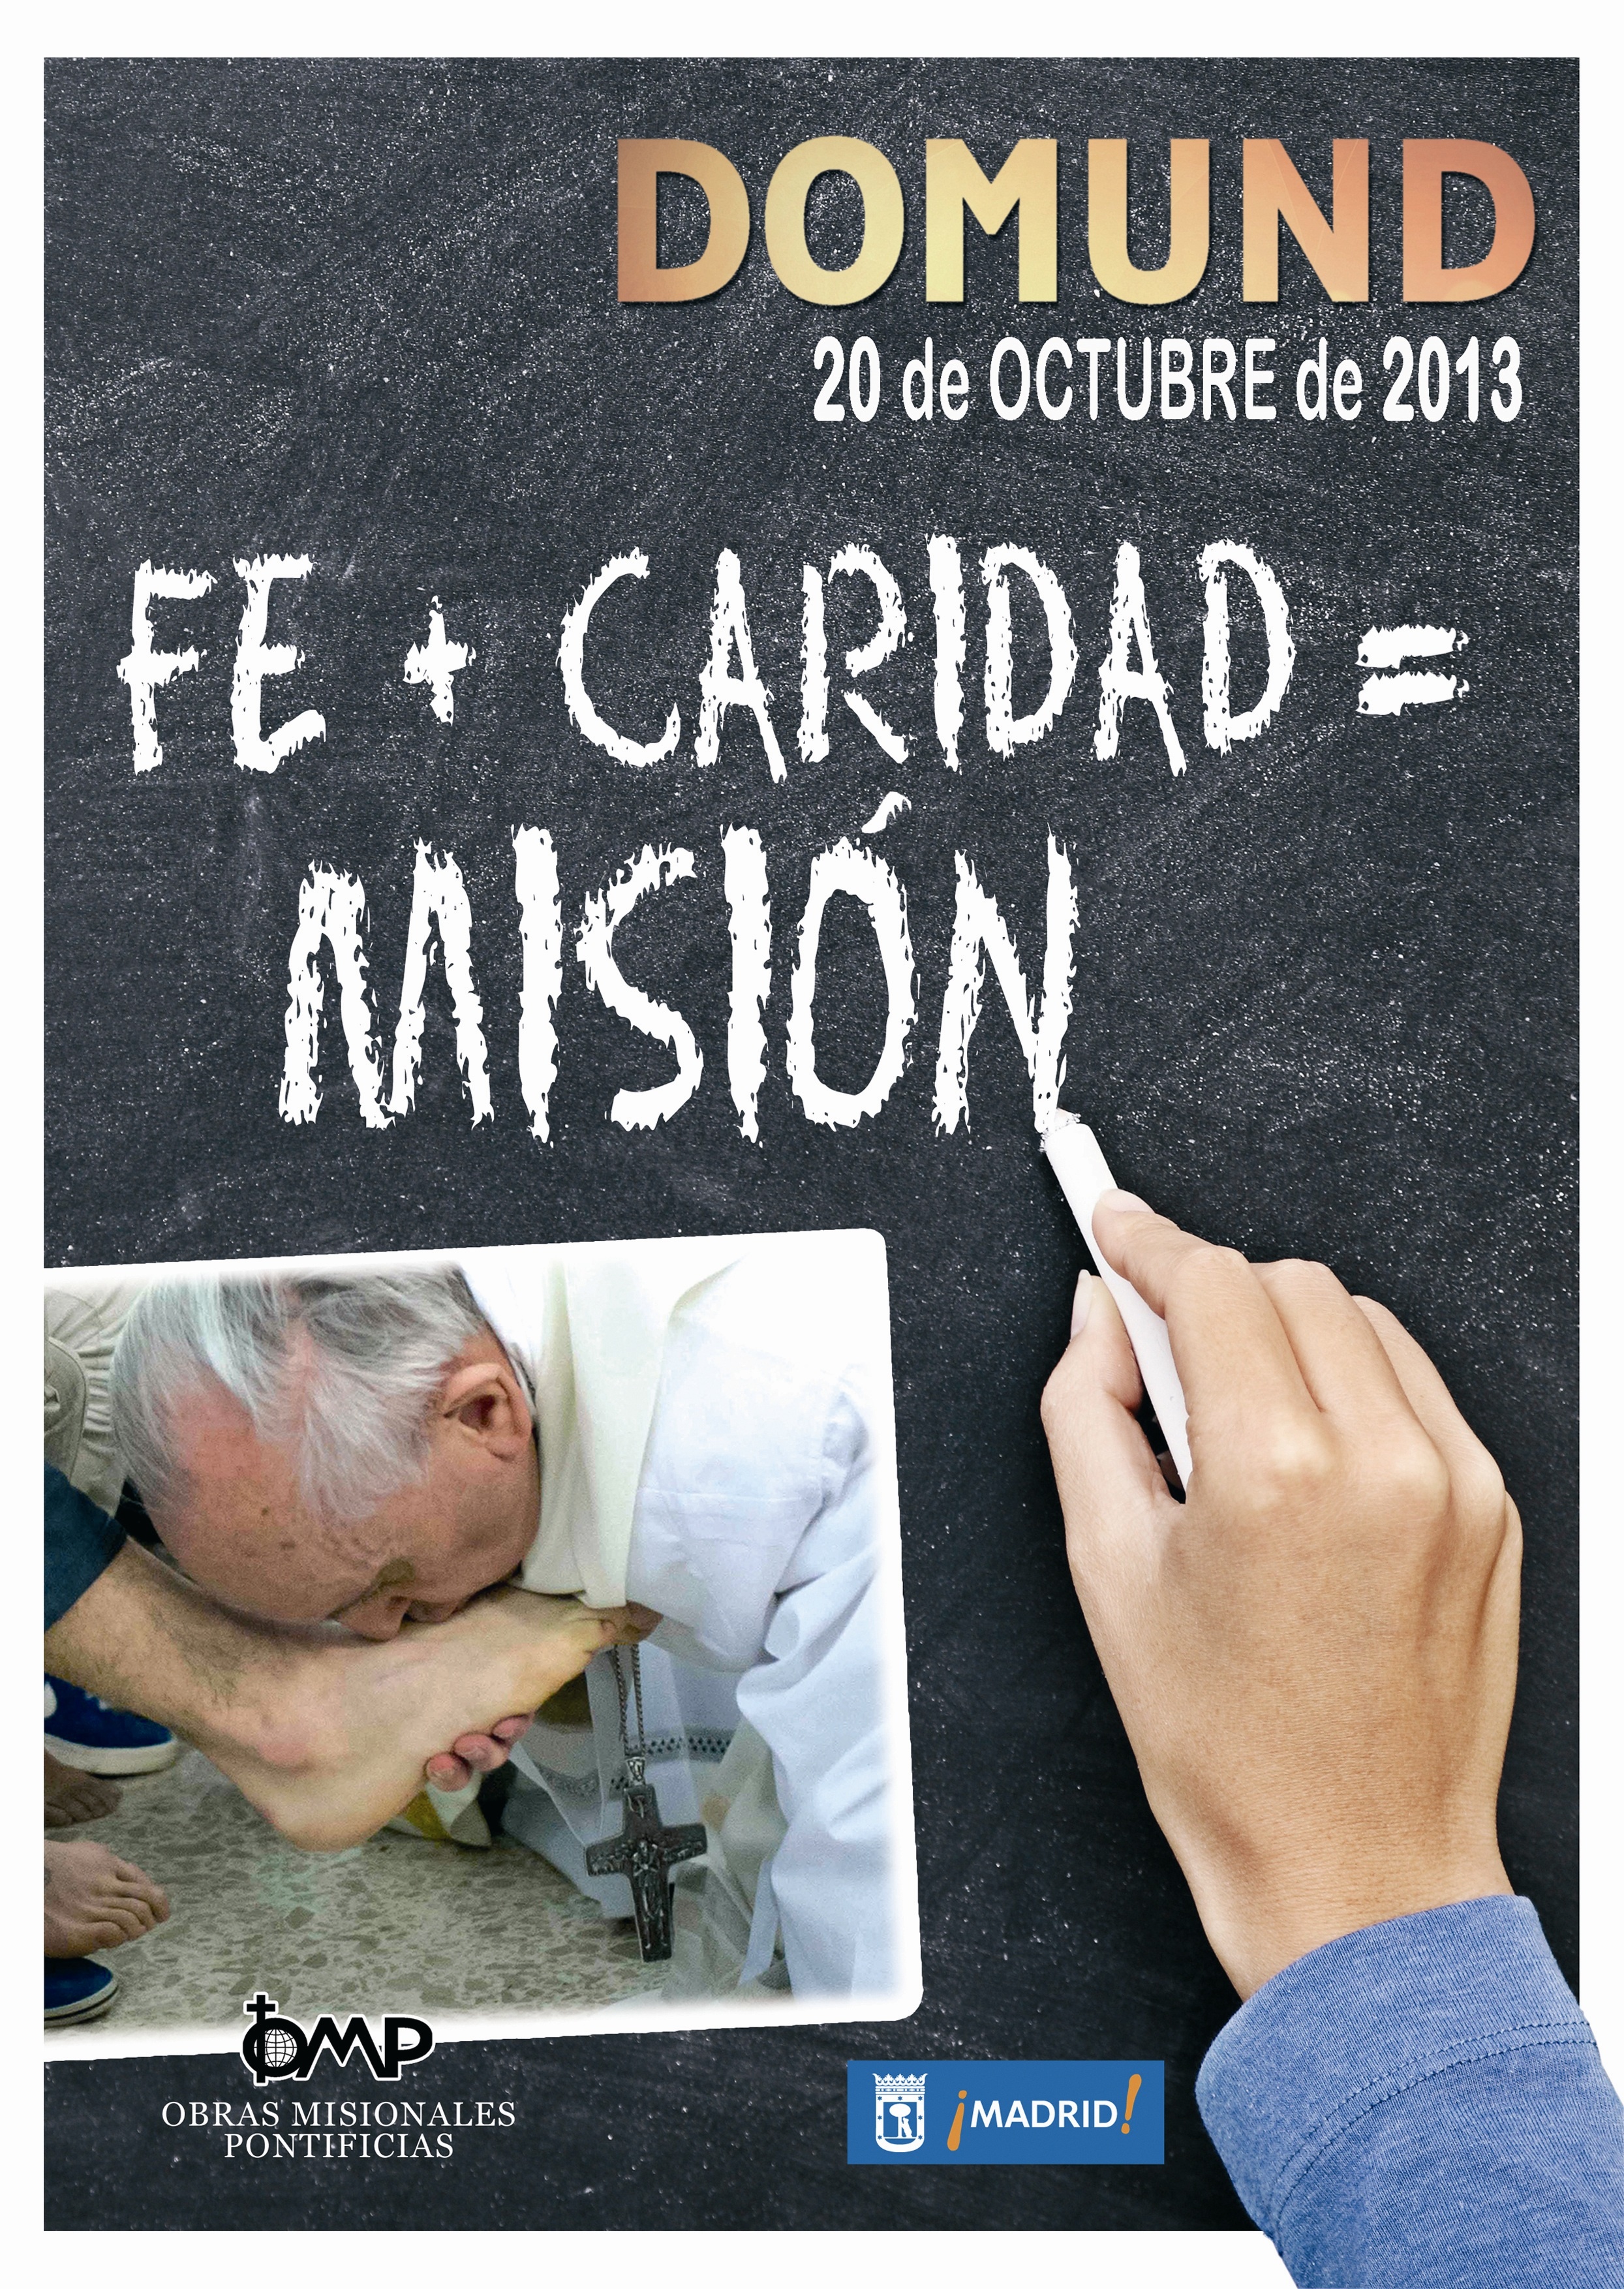 La Iglesia celebra este domingo el día del Domund bajo el lema de »Fe + Caridad = Misión»